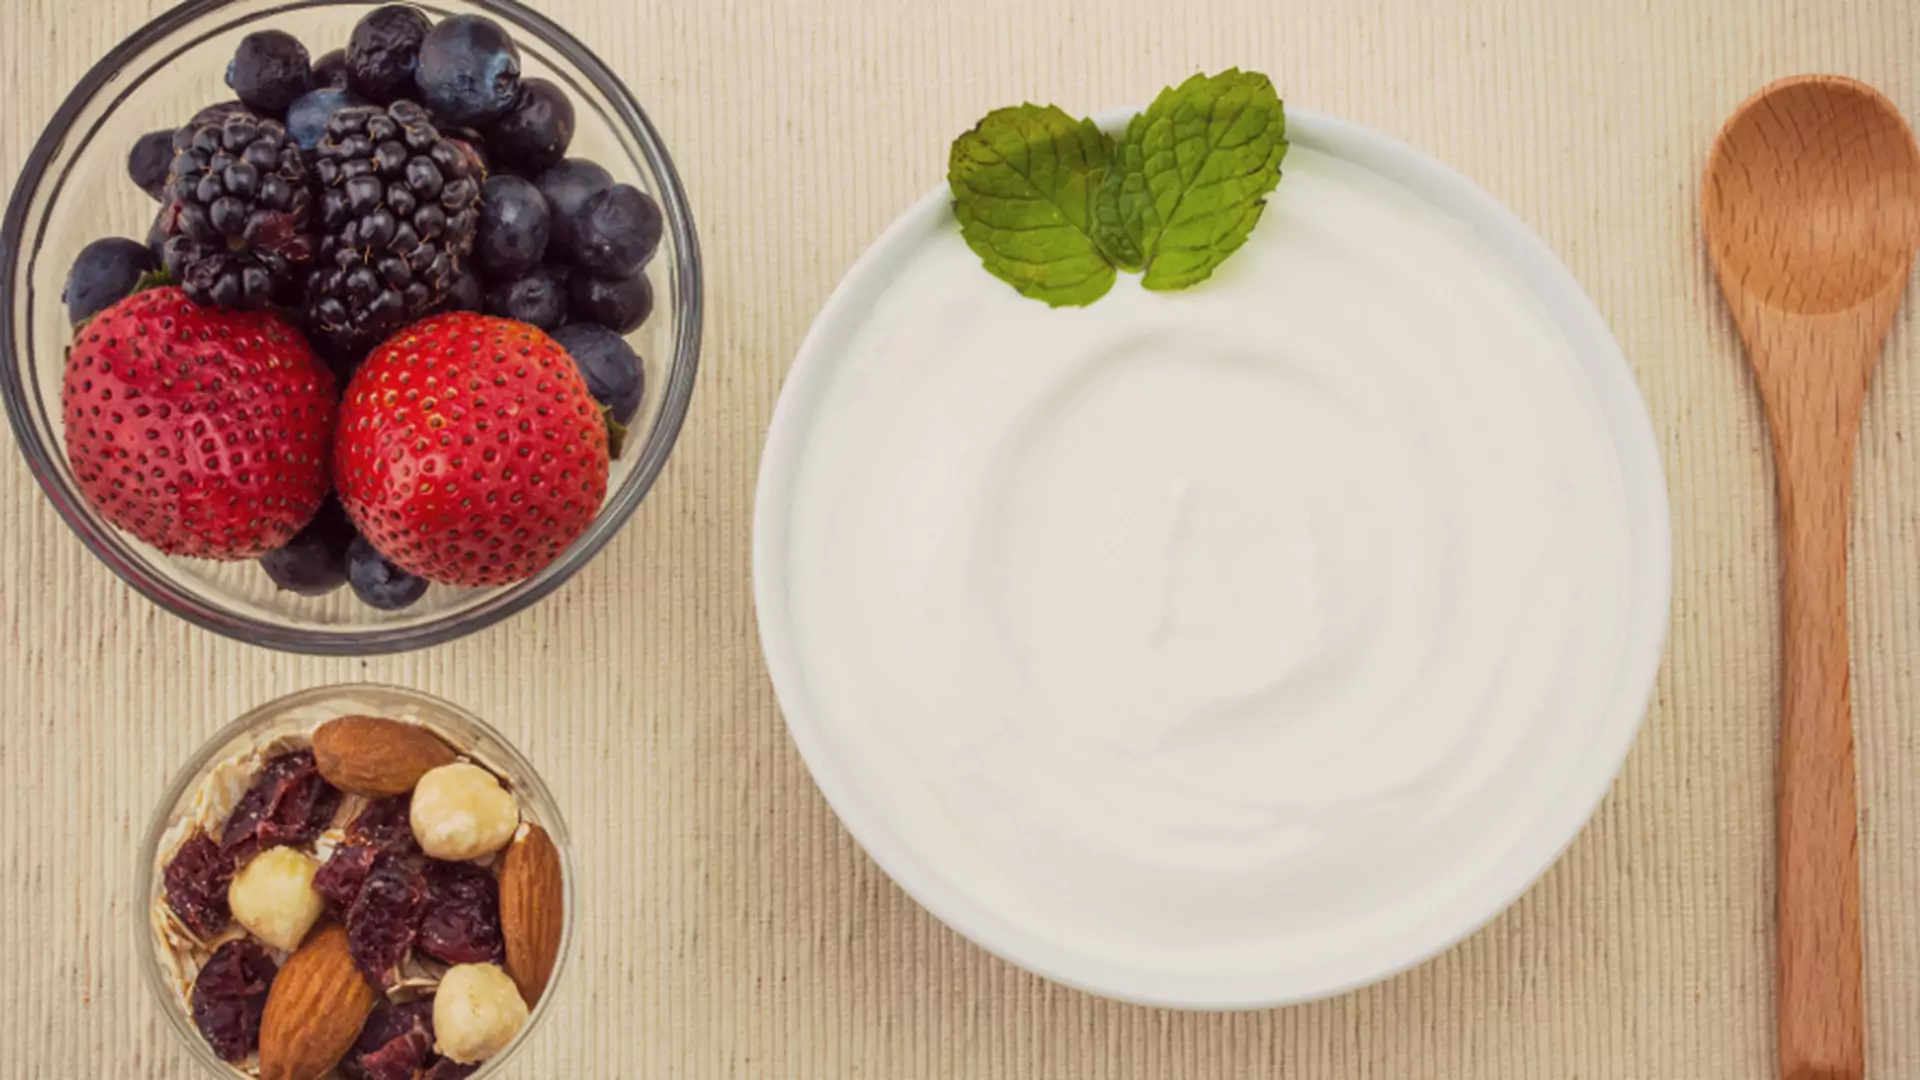 20 sposobów, w których jogurt grecki pomoże Ci schudnąć! Sprawdź je wszystkie